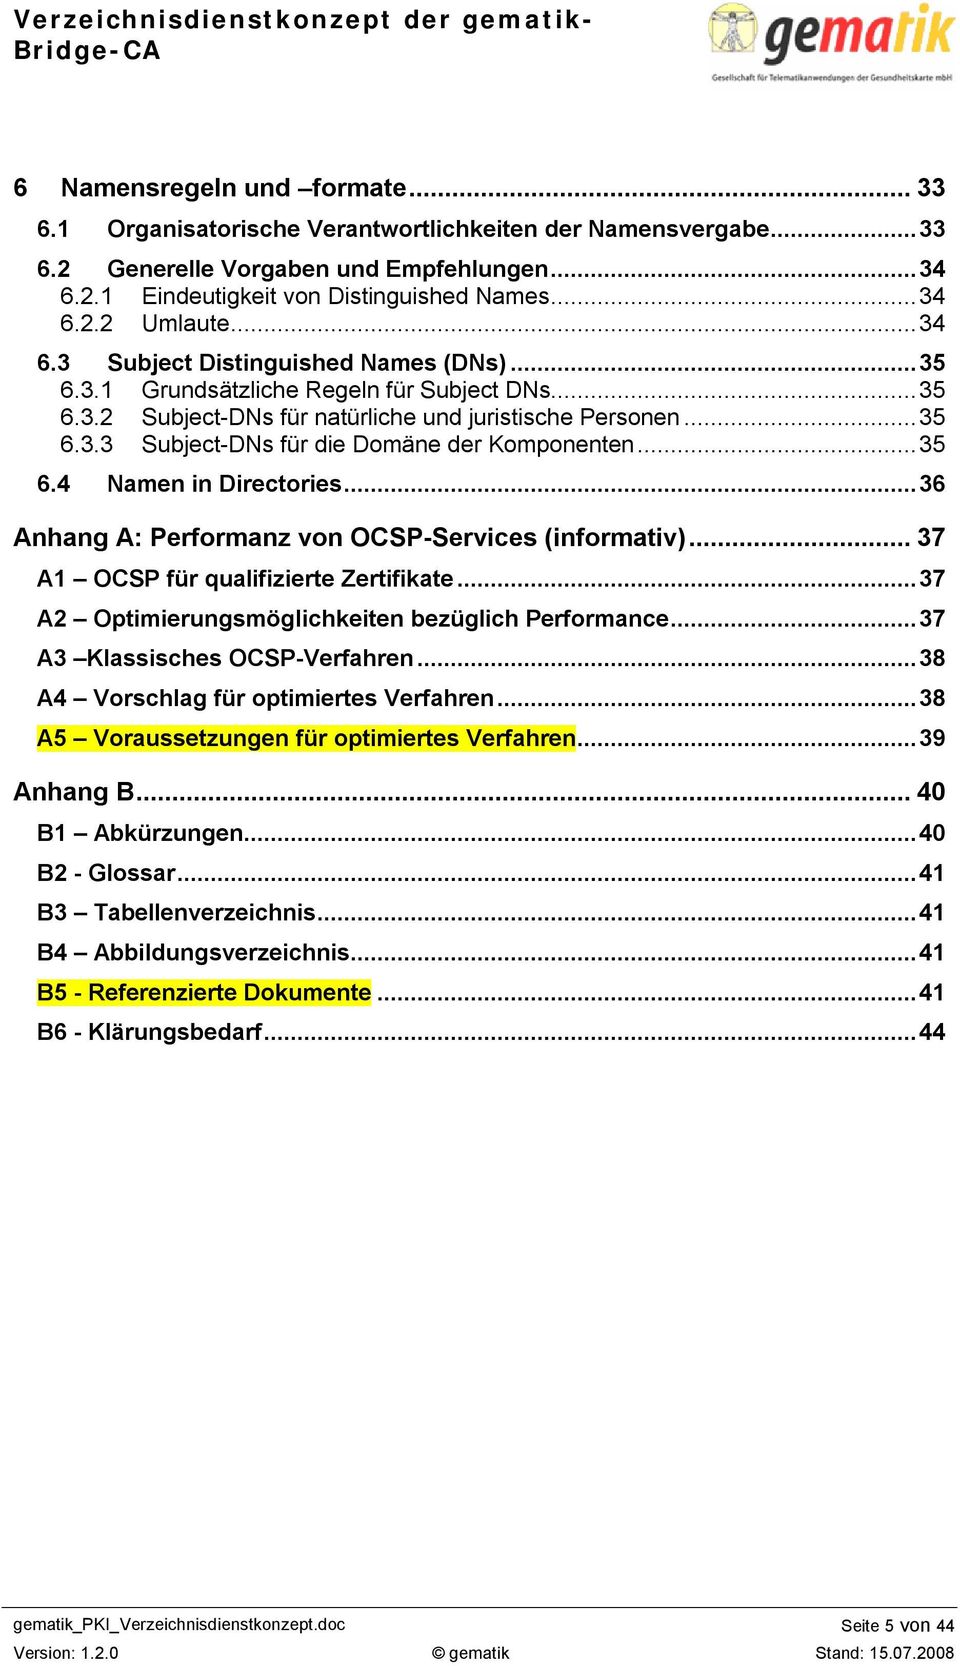 ..35 6.4 Namen in Directories...36 Anhang A: Performanz von OCSP-Services (informativ)...37 A1 OCSP für qualifizierte Zertifikate...37 A2 Optimierungsmöglichkeiten bezüglich Performance.